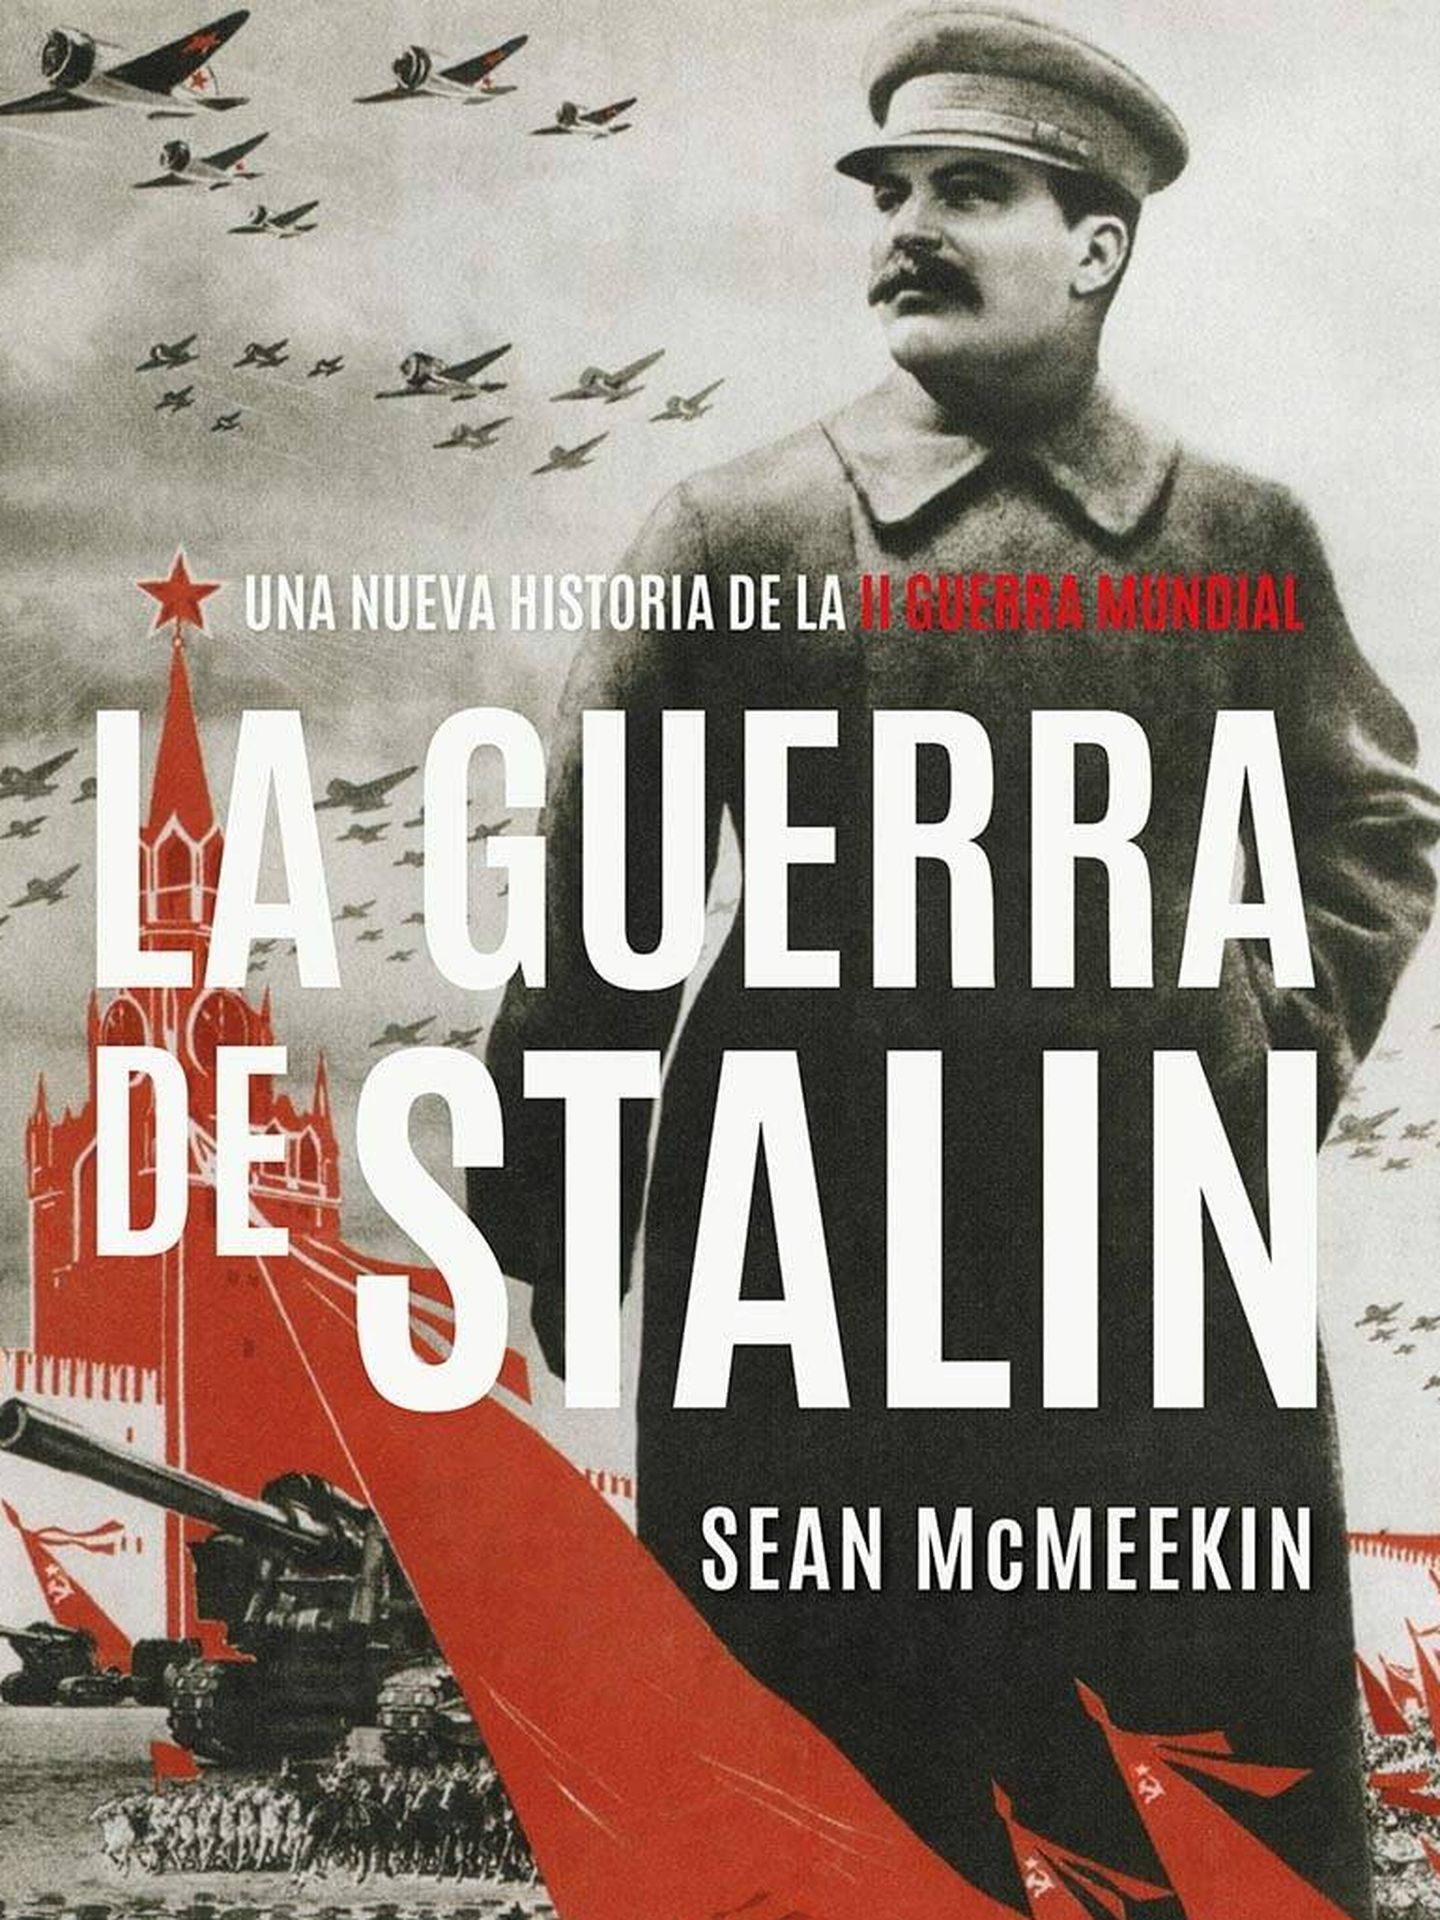 'La guerra de Stalin', de Sean McMeekin (Ciudadela)